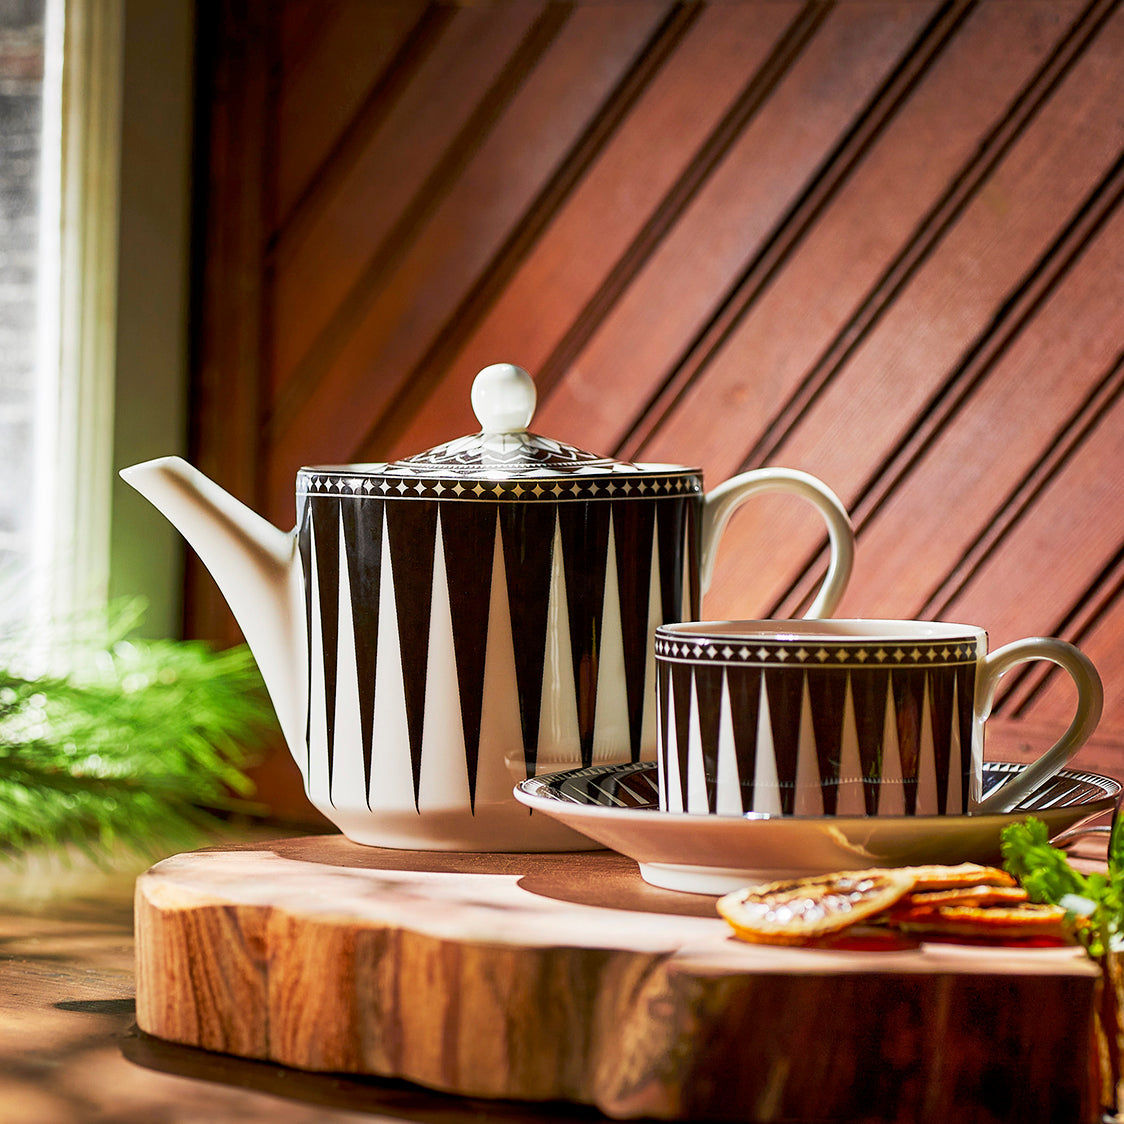 A Marrakech Petite Teapot by Caskata on a wooden cutting board.